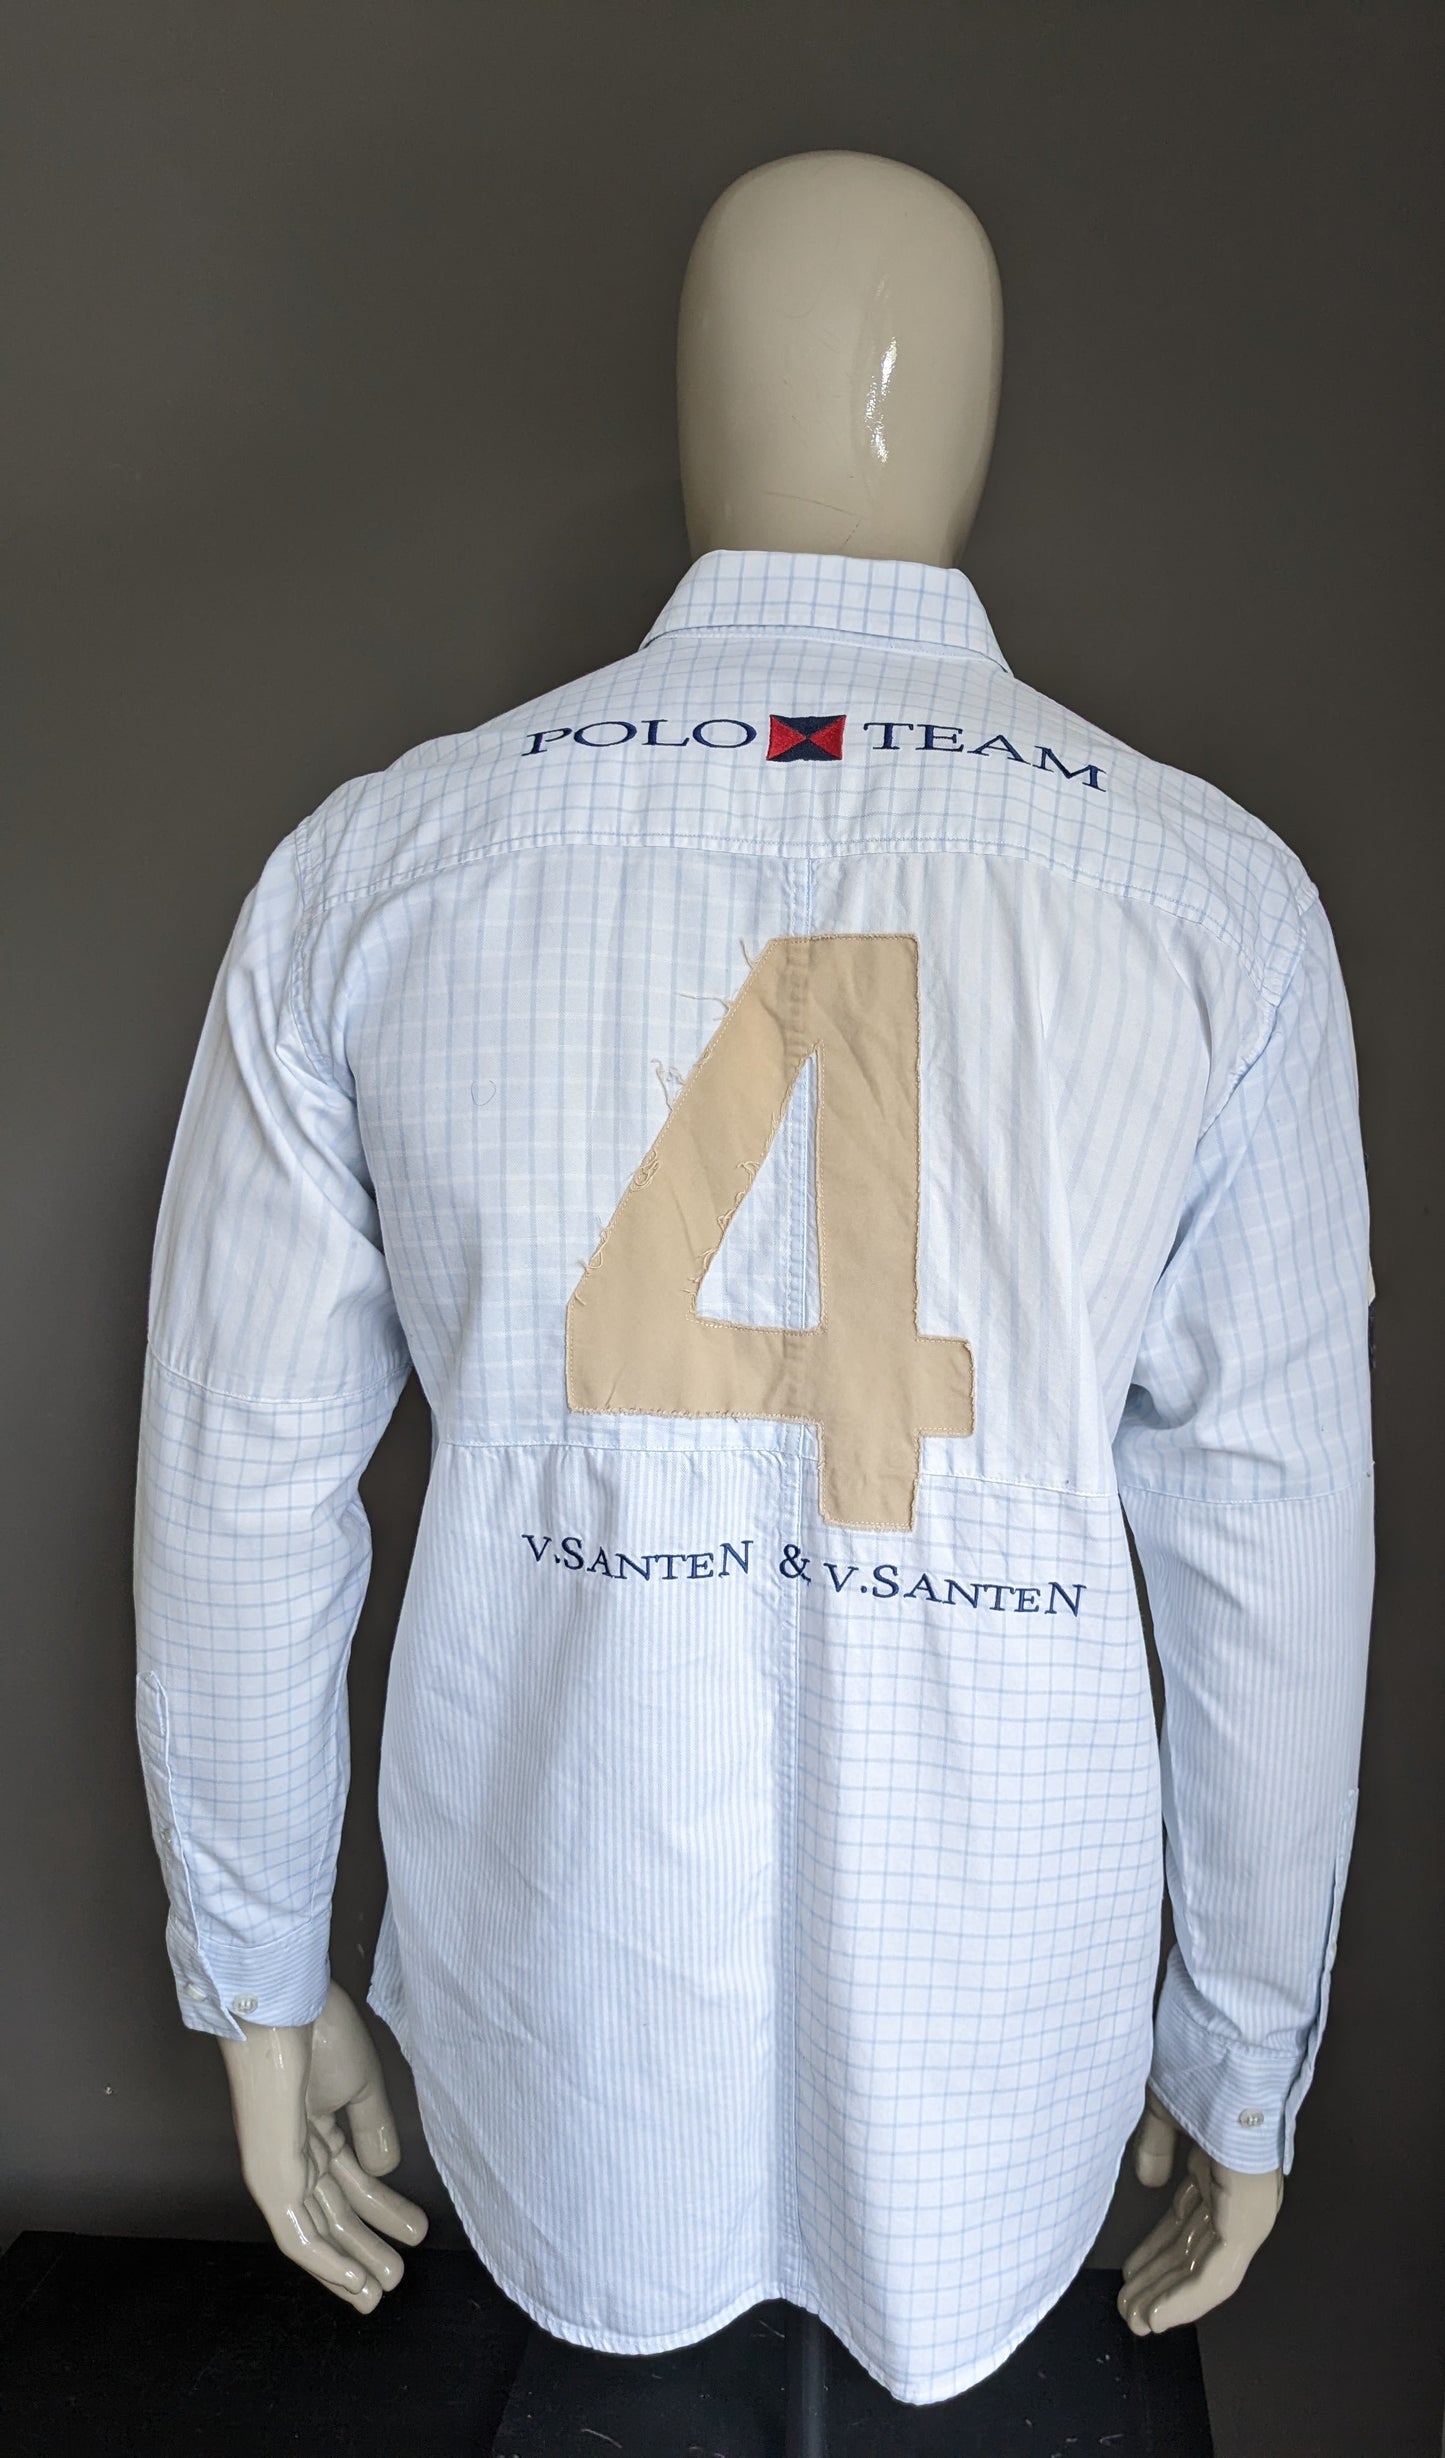 Van Santen & Van Santen overhemd. Blauw Wit gekleurd met applicaties. Maat L.